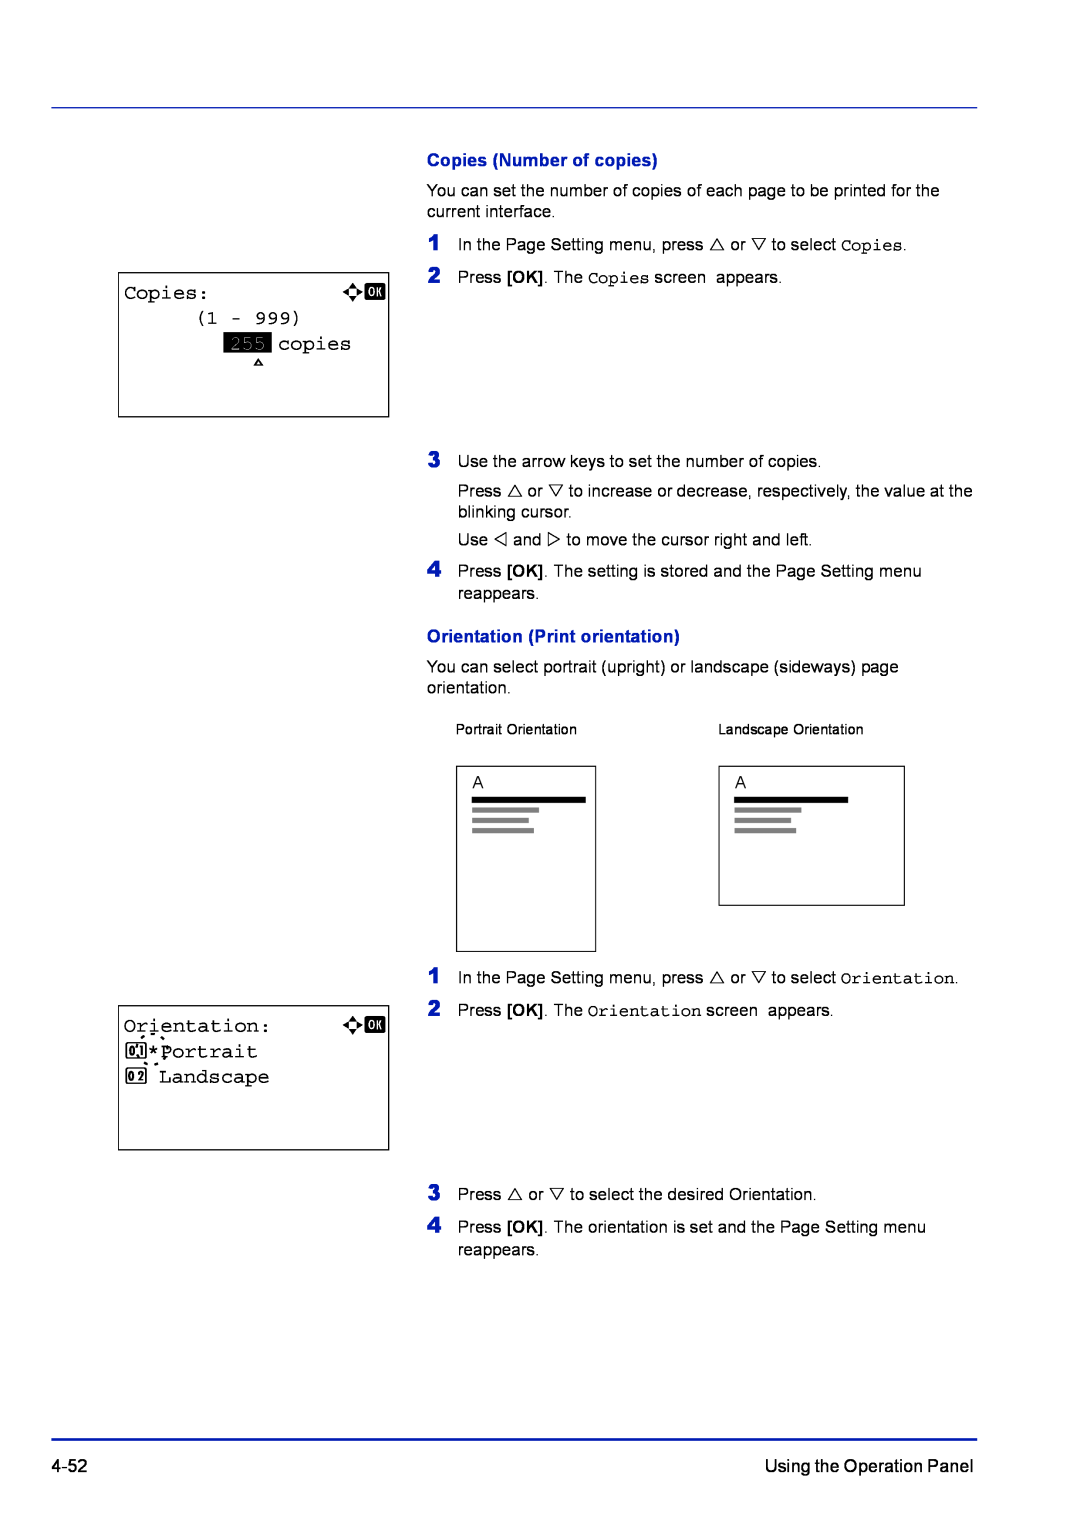 Kyocera FS-1100 manual Orientation: a b 1*Portrait 2Landscape, Copies Number of copies, Orientation Print orientation 